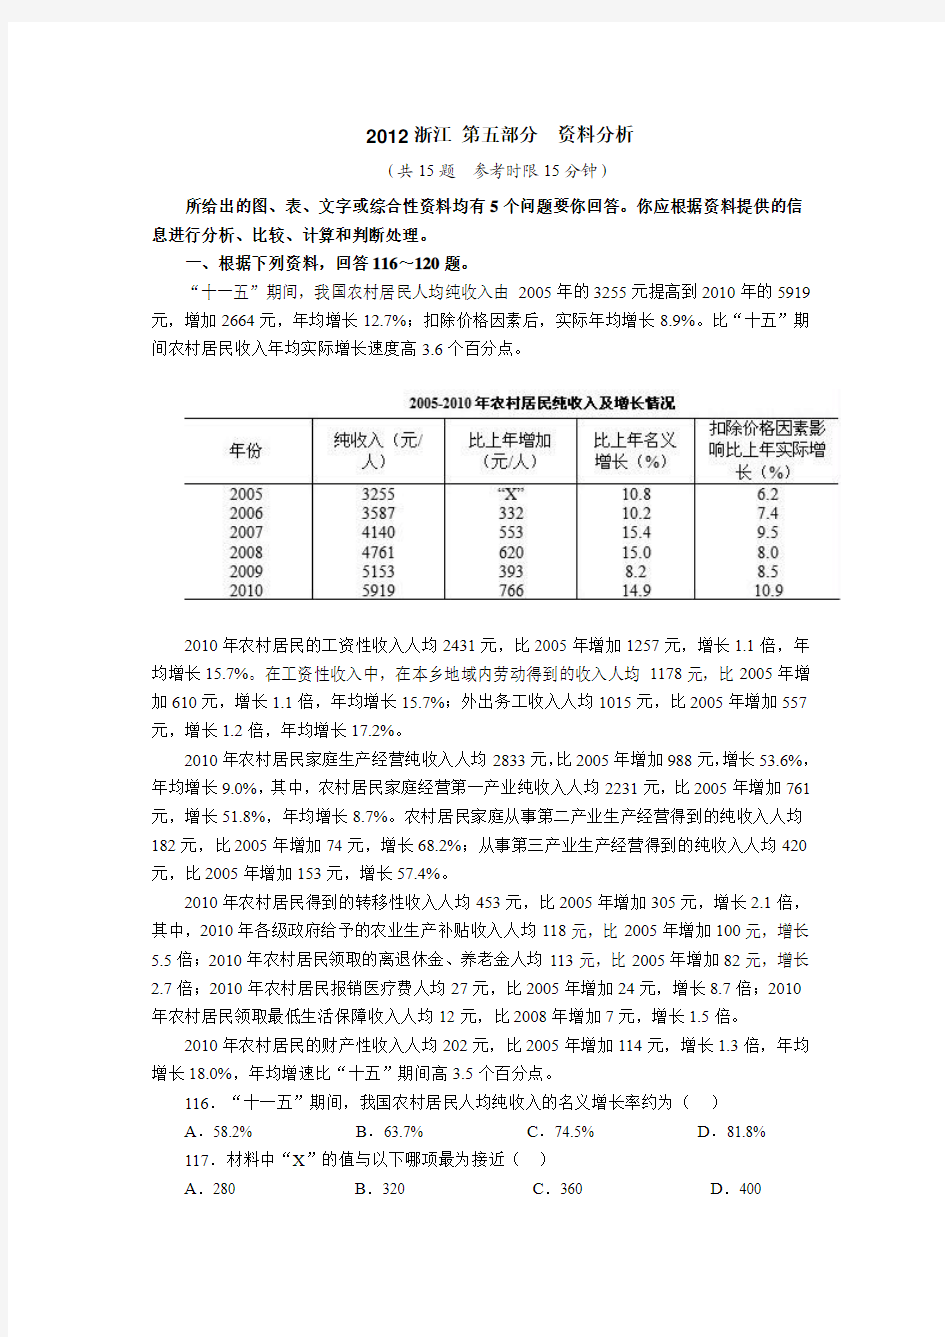 2012-2014年浙江资料分析